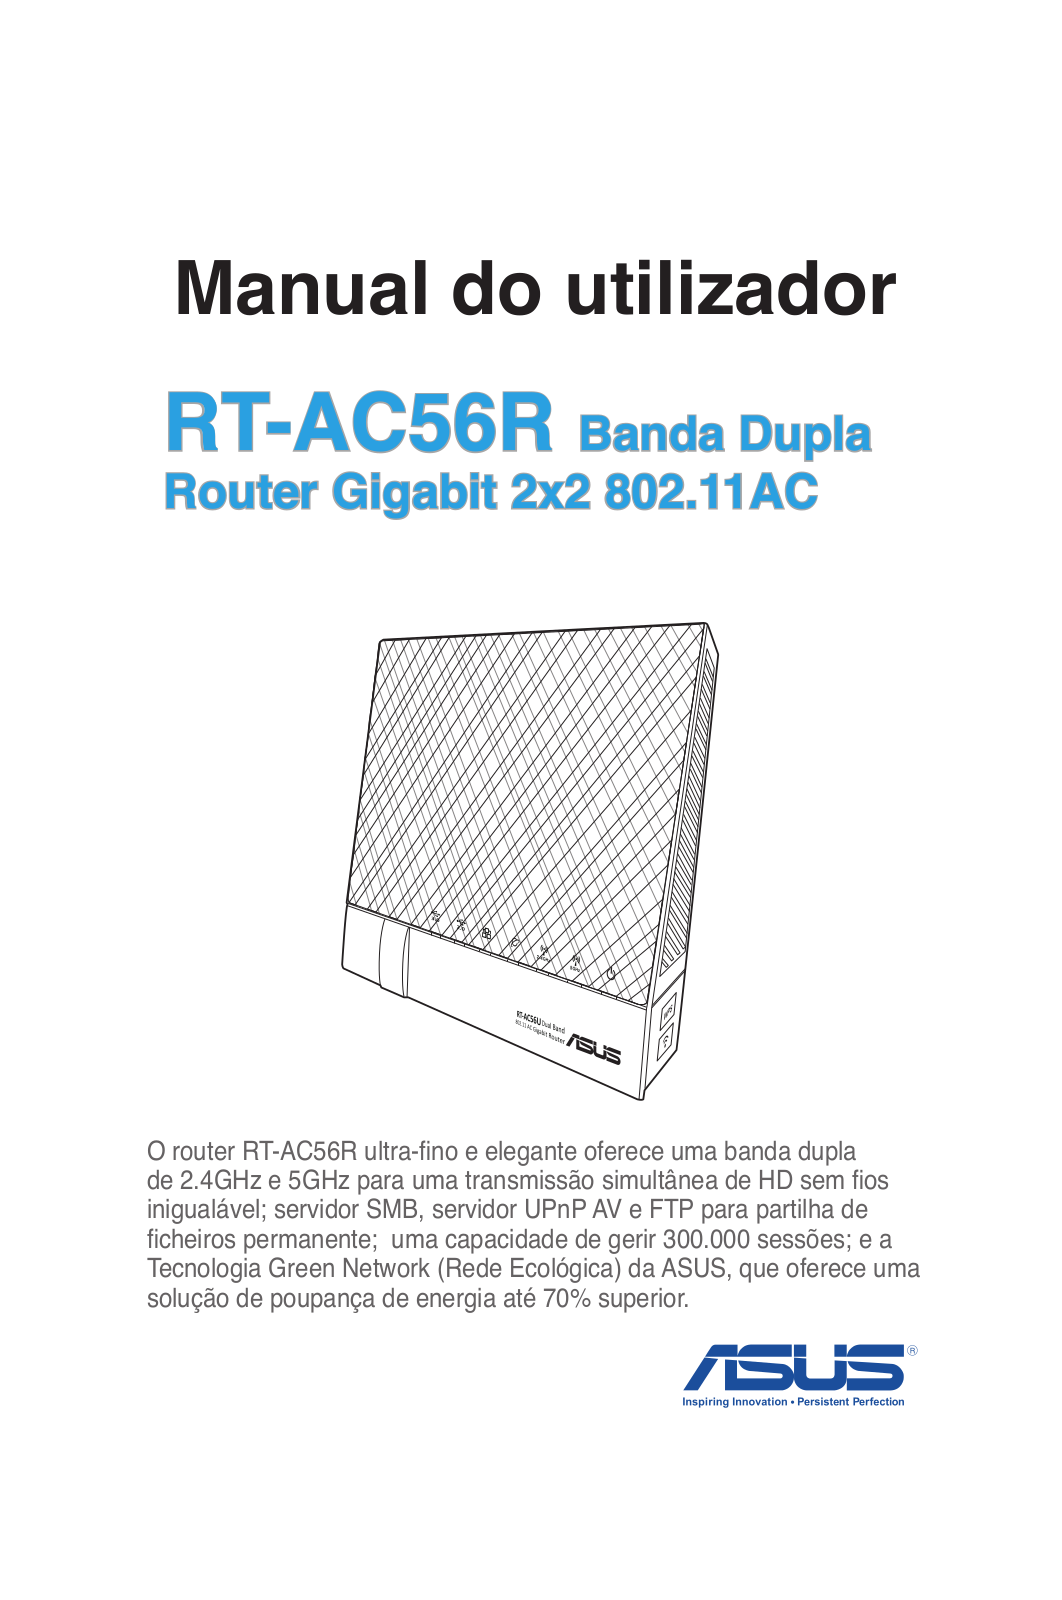 ASUS RT-AC56R, PG8016 User Manual